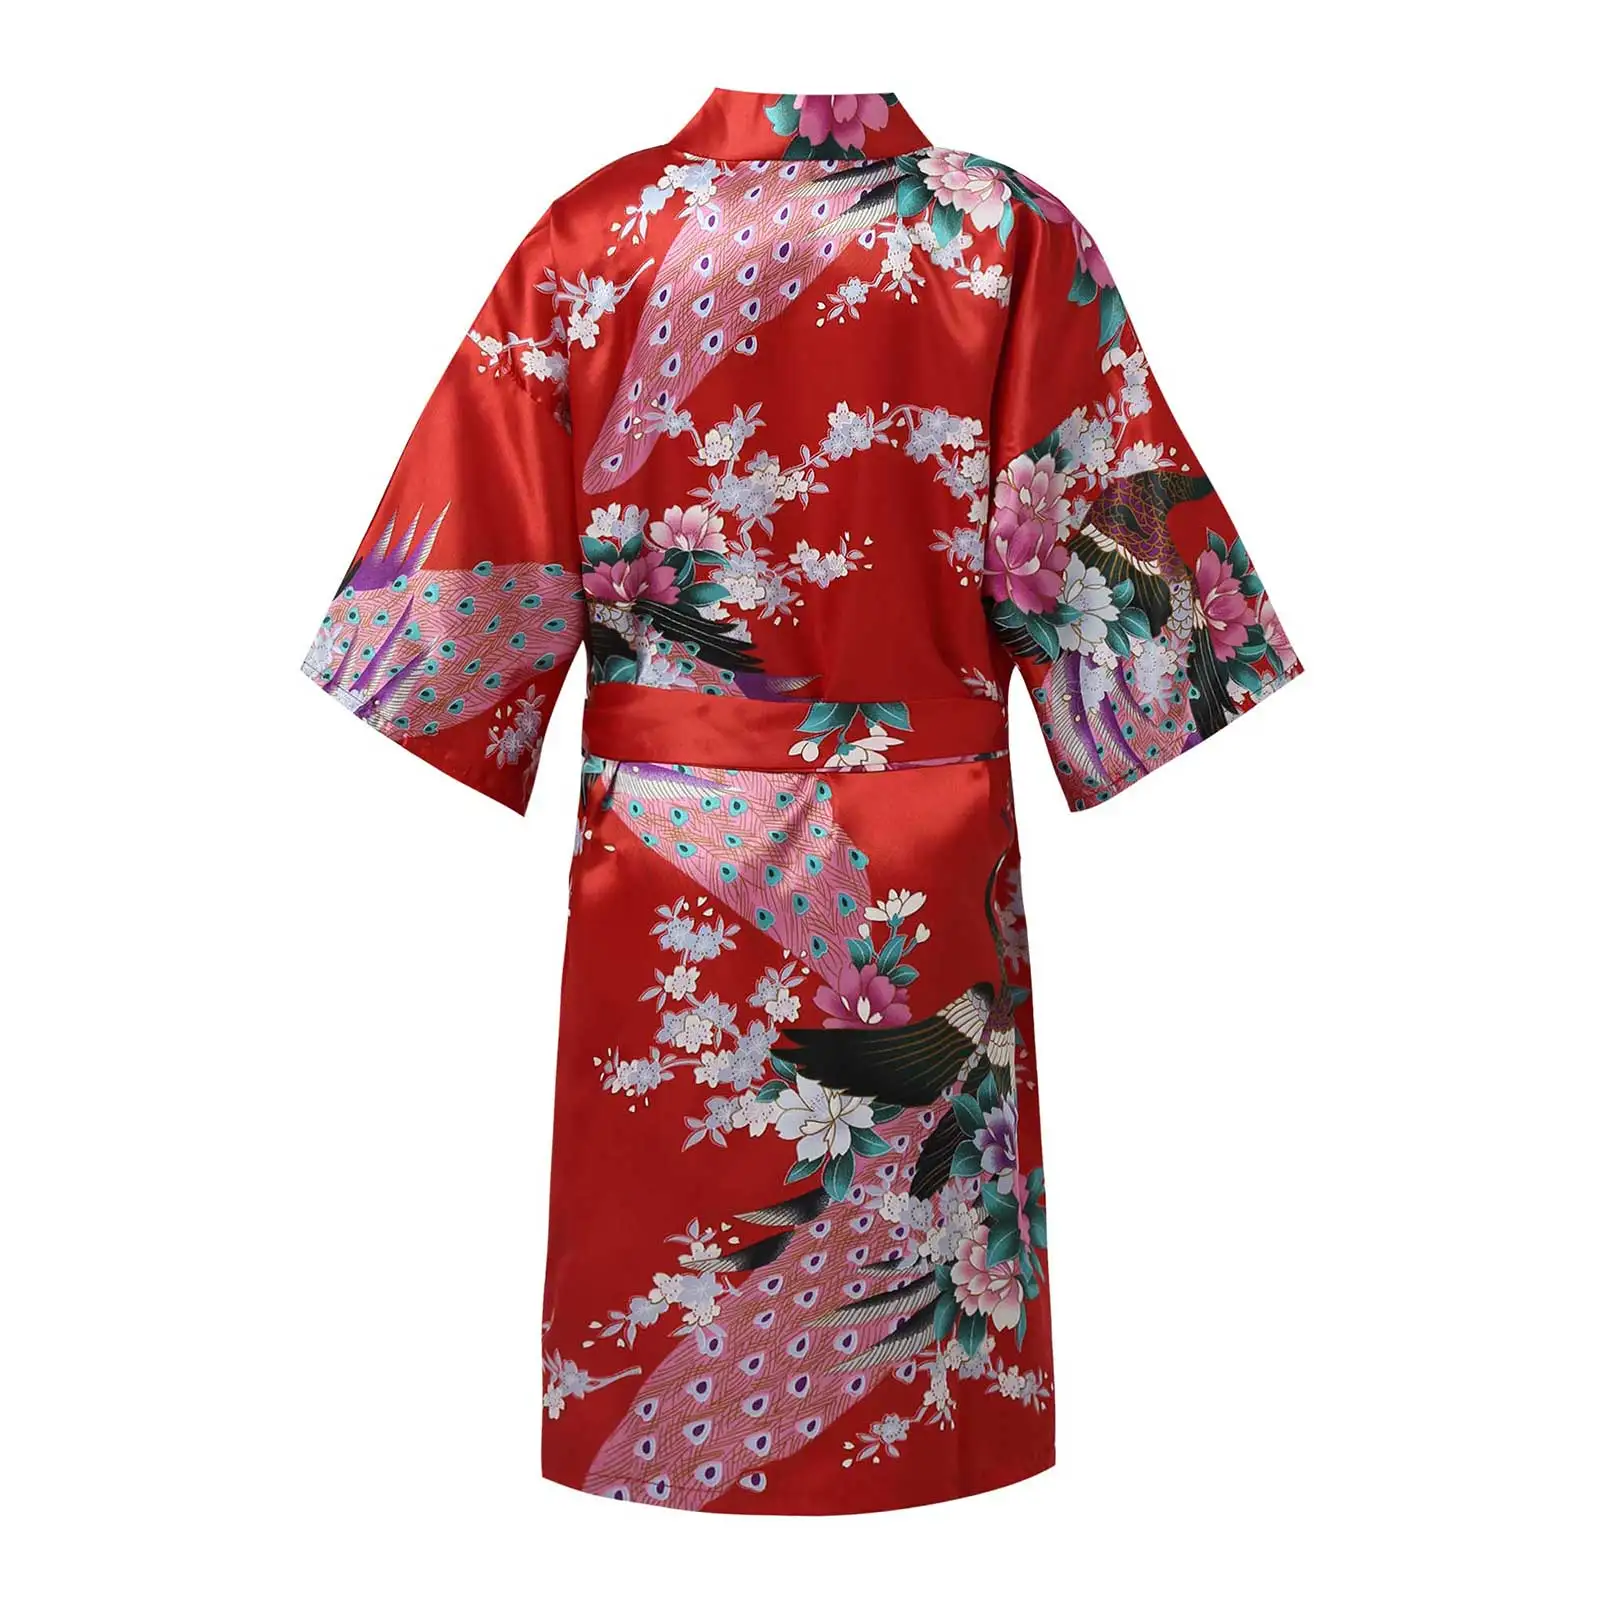 Děti dívčí japonský night-gowns páv kvést tištěným falešný satén kimono róba župan noční košile pro lázeňského večírek svatební narozeniny